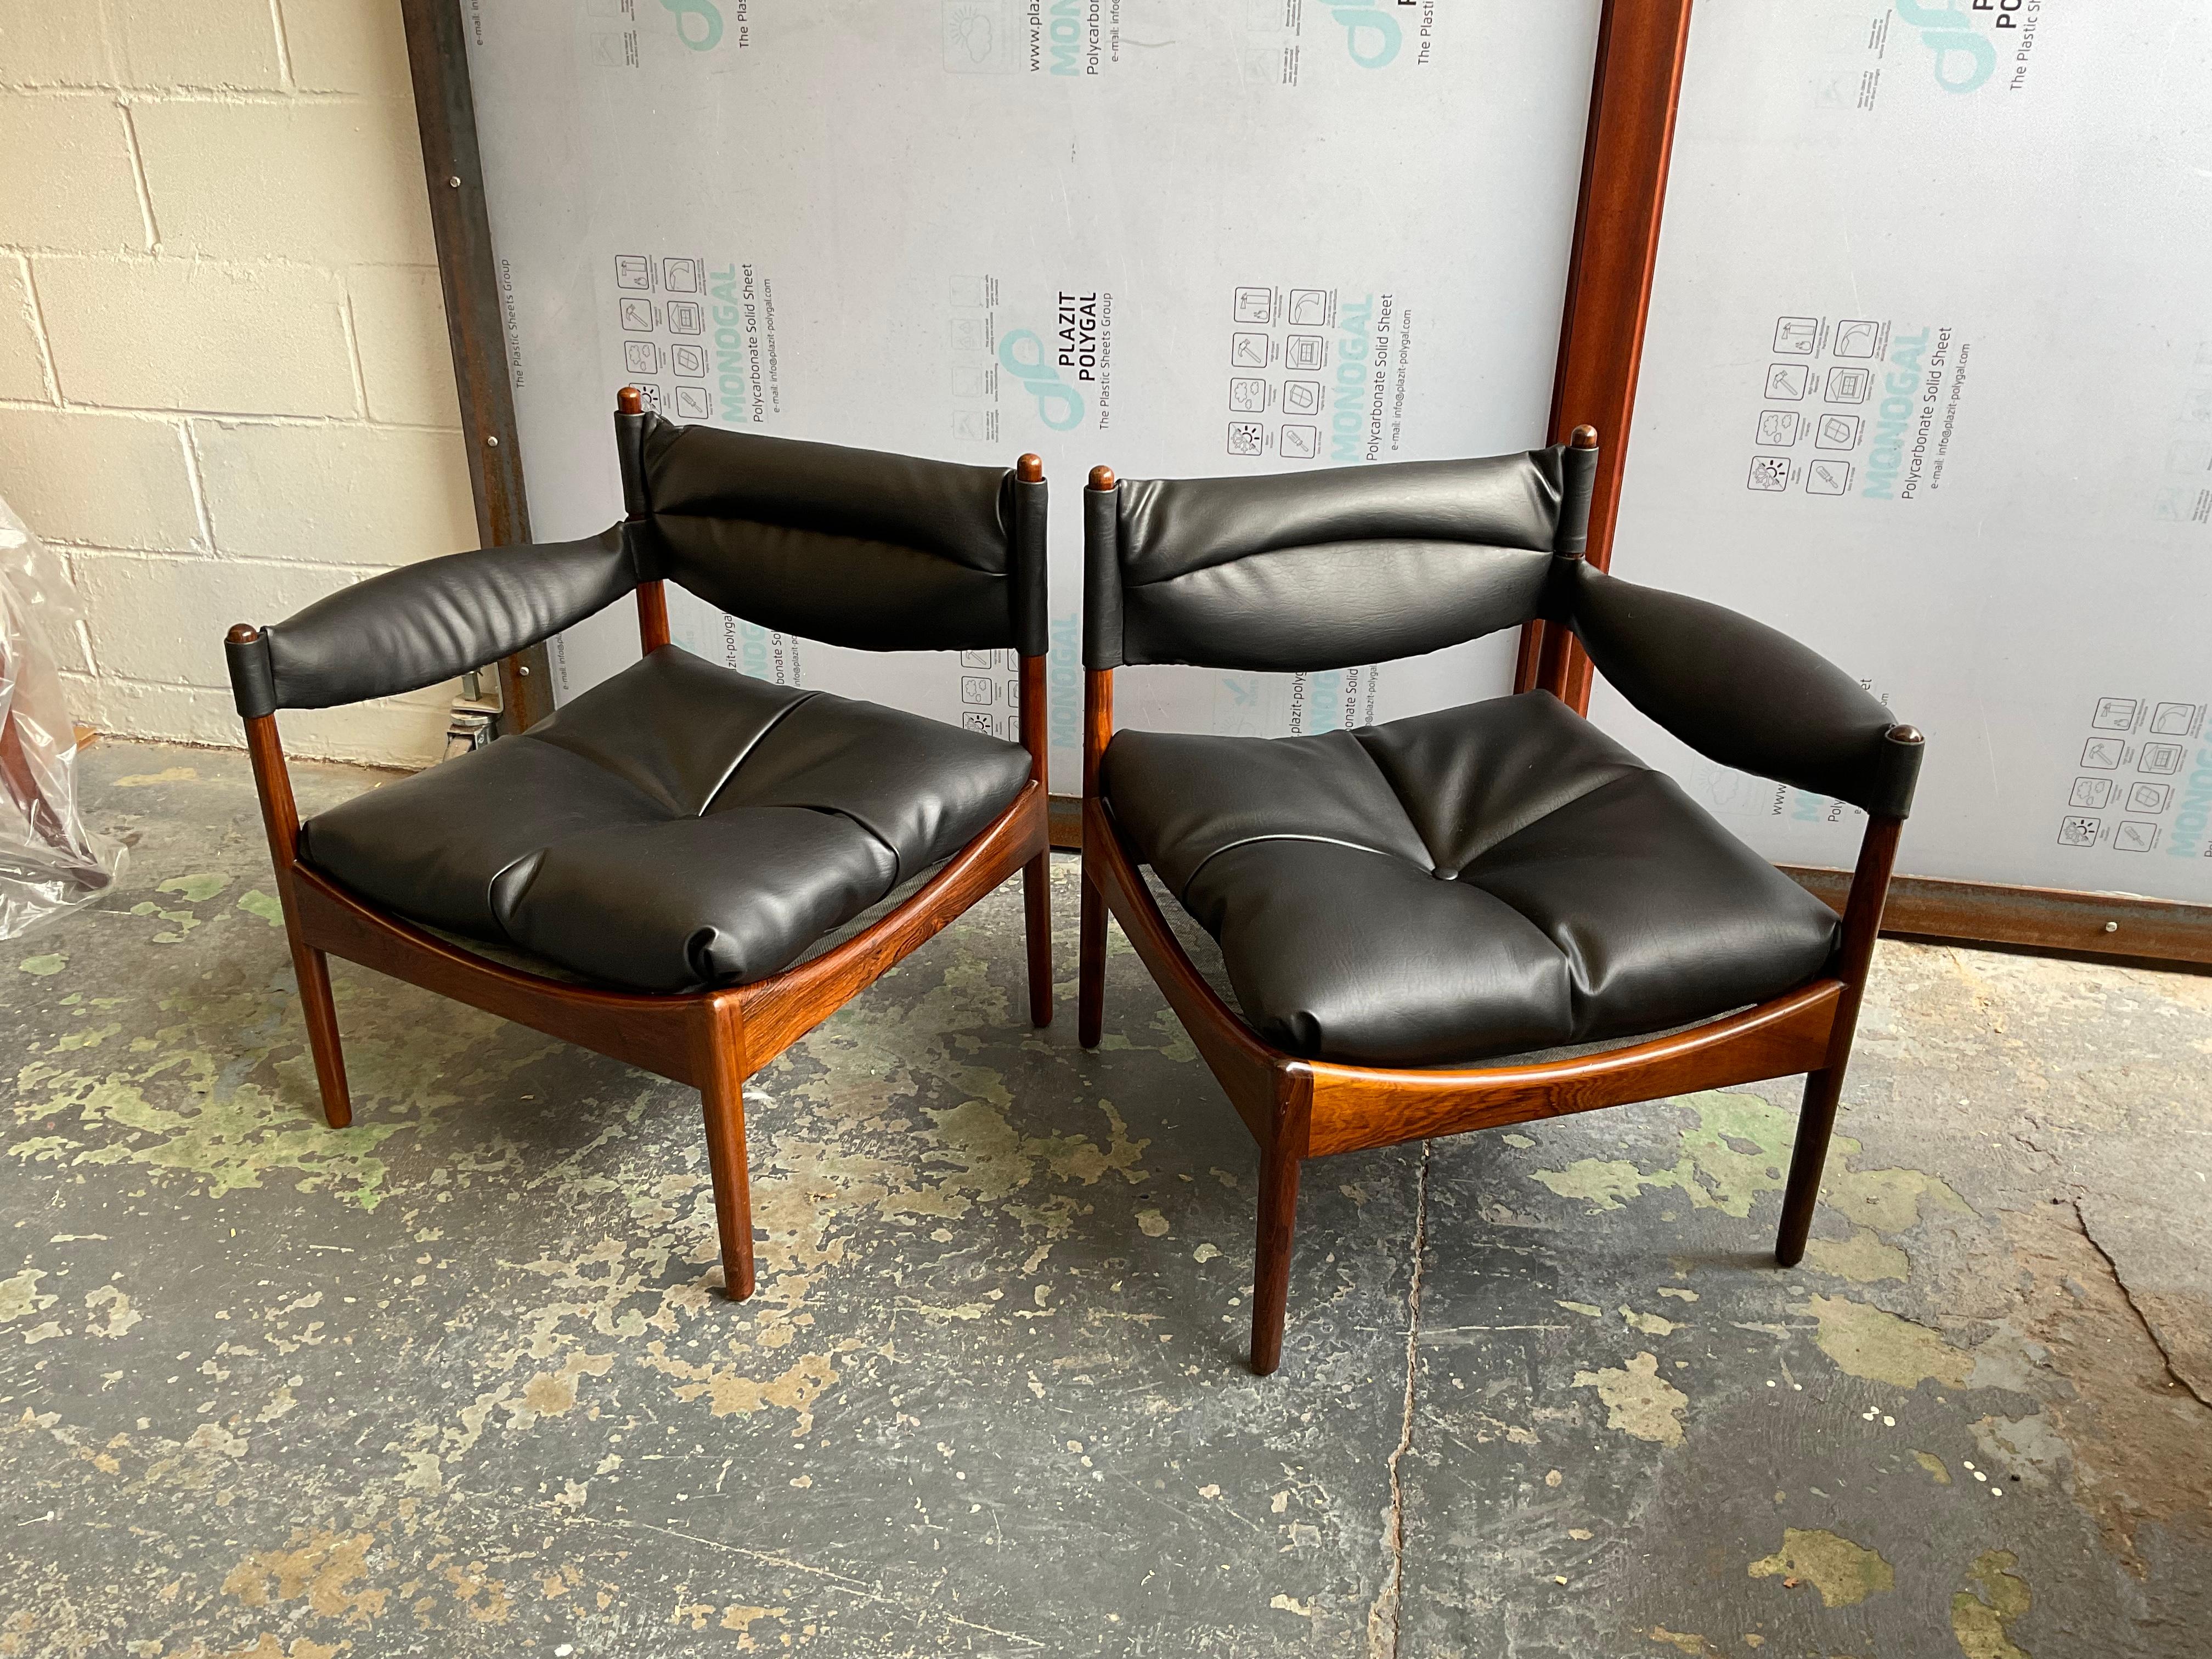 Un canapé composé de deux fauteuils individuels dotés chacun d'un bras - voici le système Modus de Kristian Vedel pour Søren Willadsen, 1963. La sophistication ultime par la simplicité, ce design sans fioritures mais esthétiquement robuste ravit